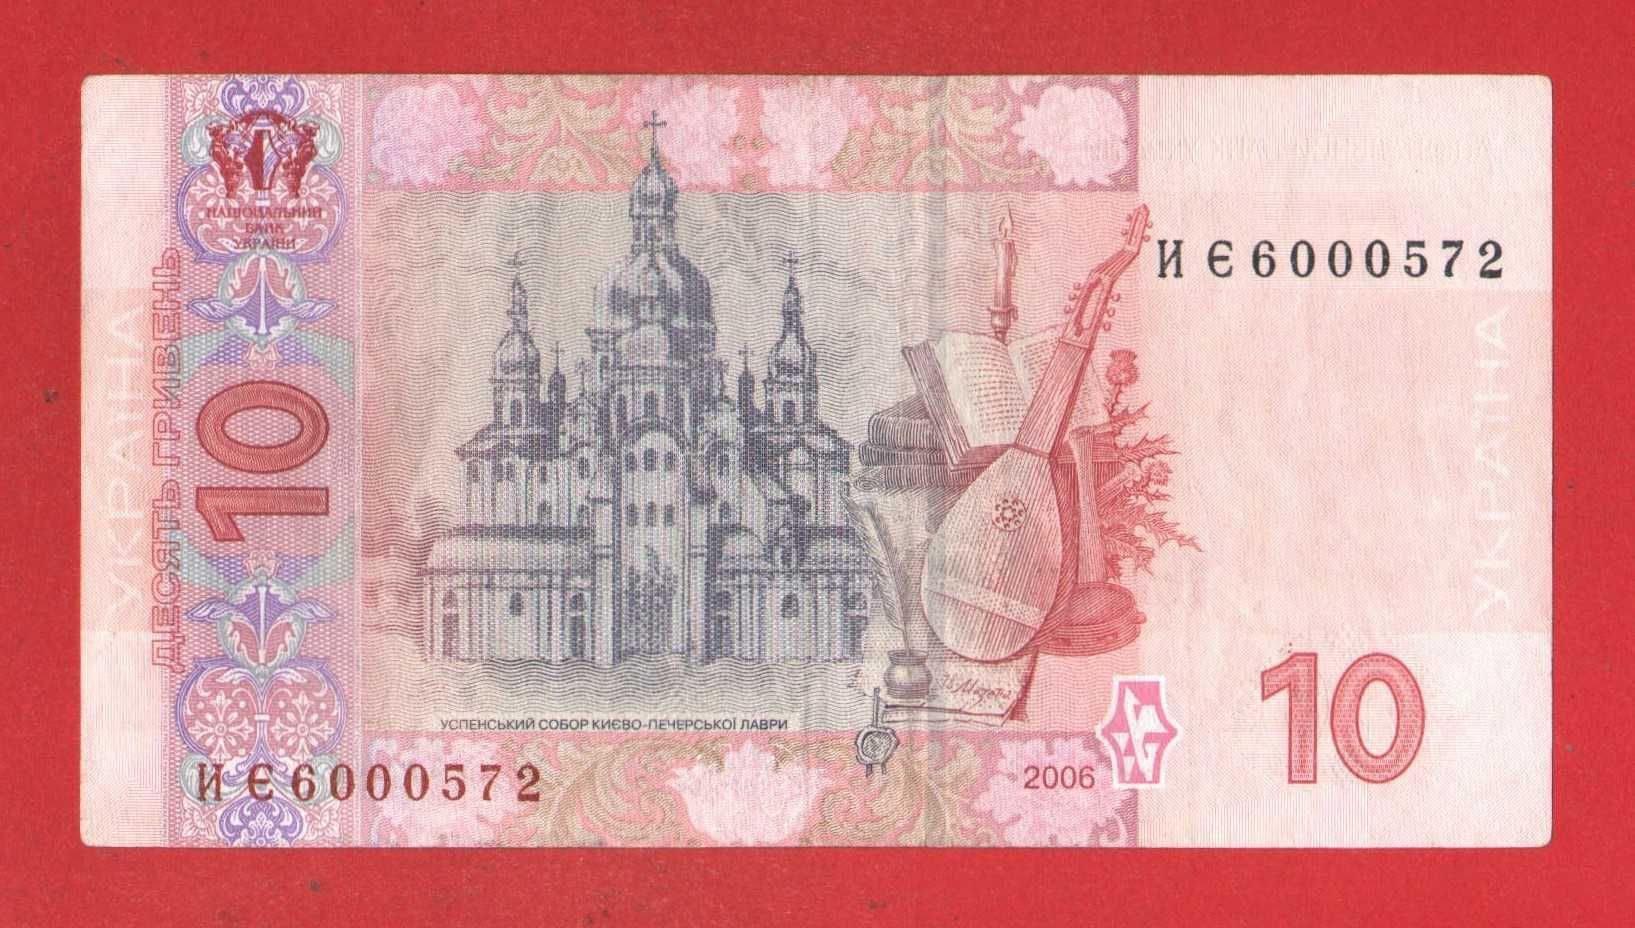 10 грн гривен 2006  Стельмах купюра/ банкнота